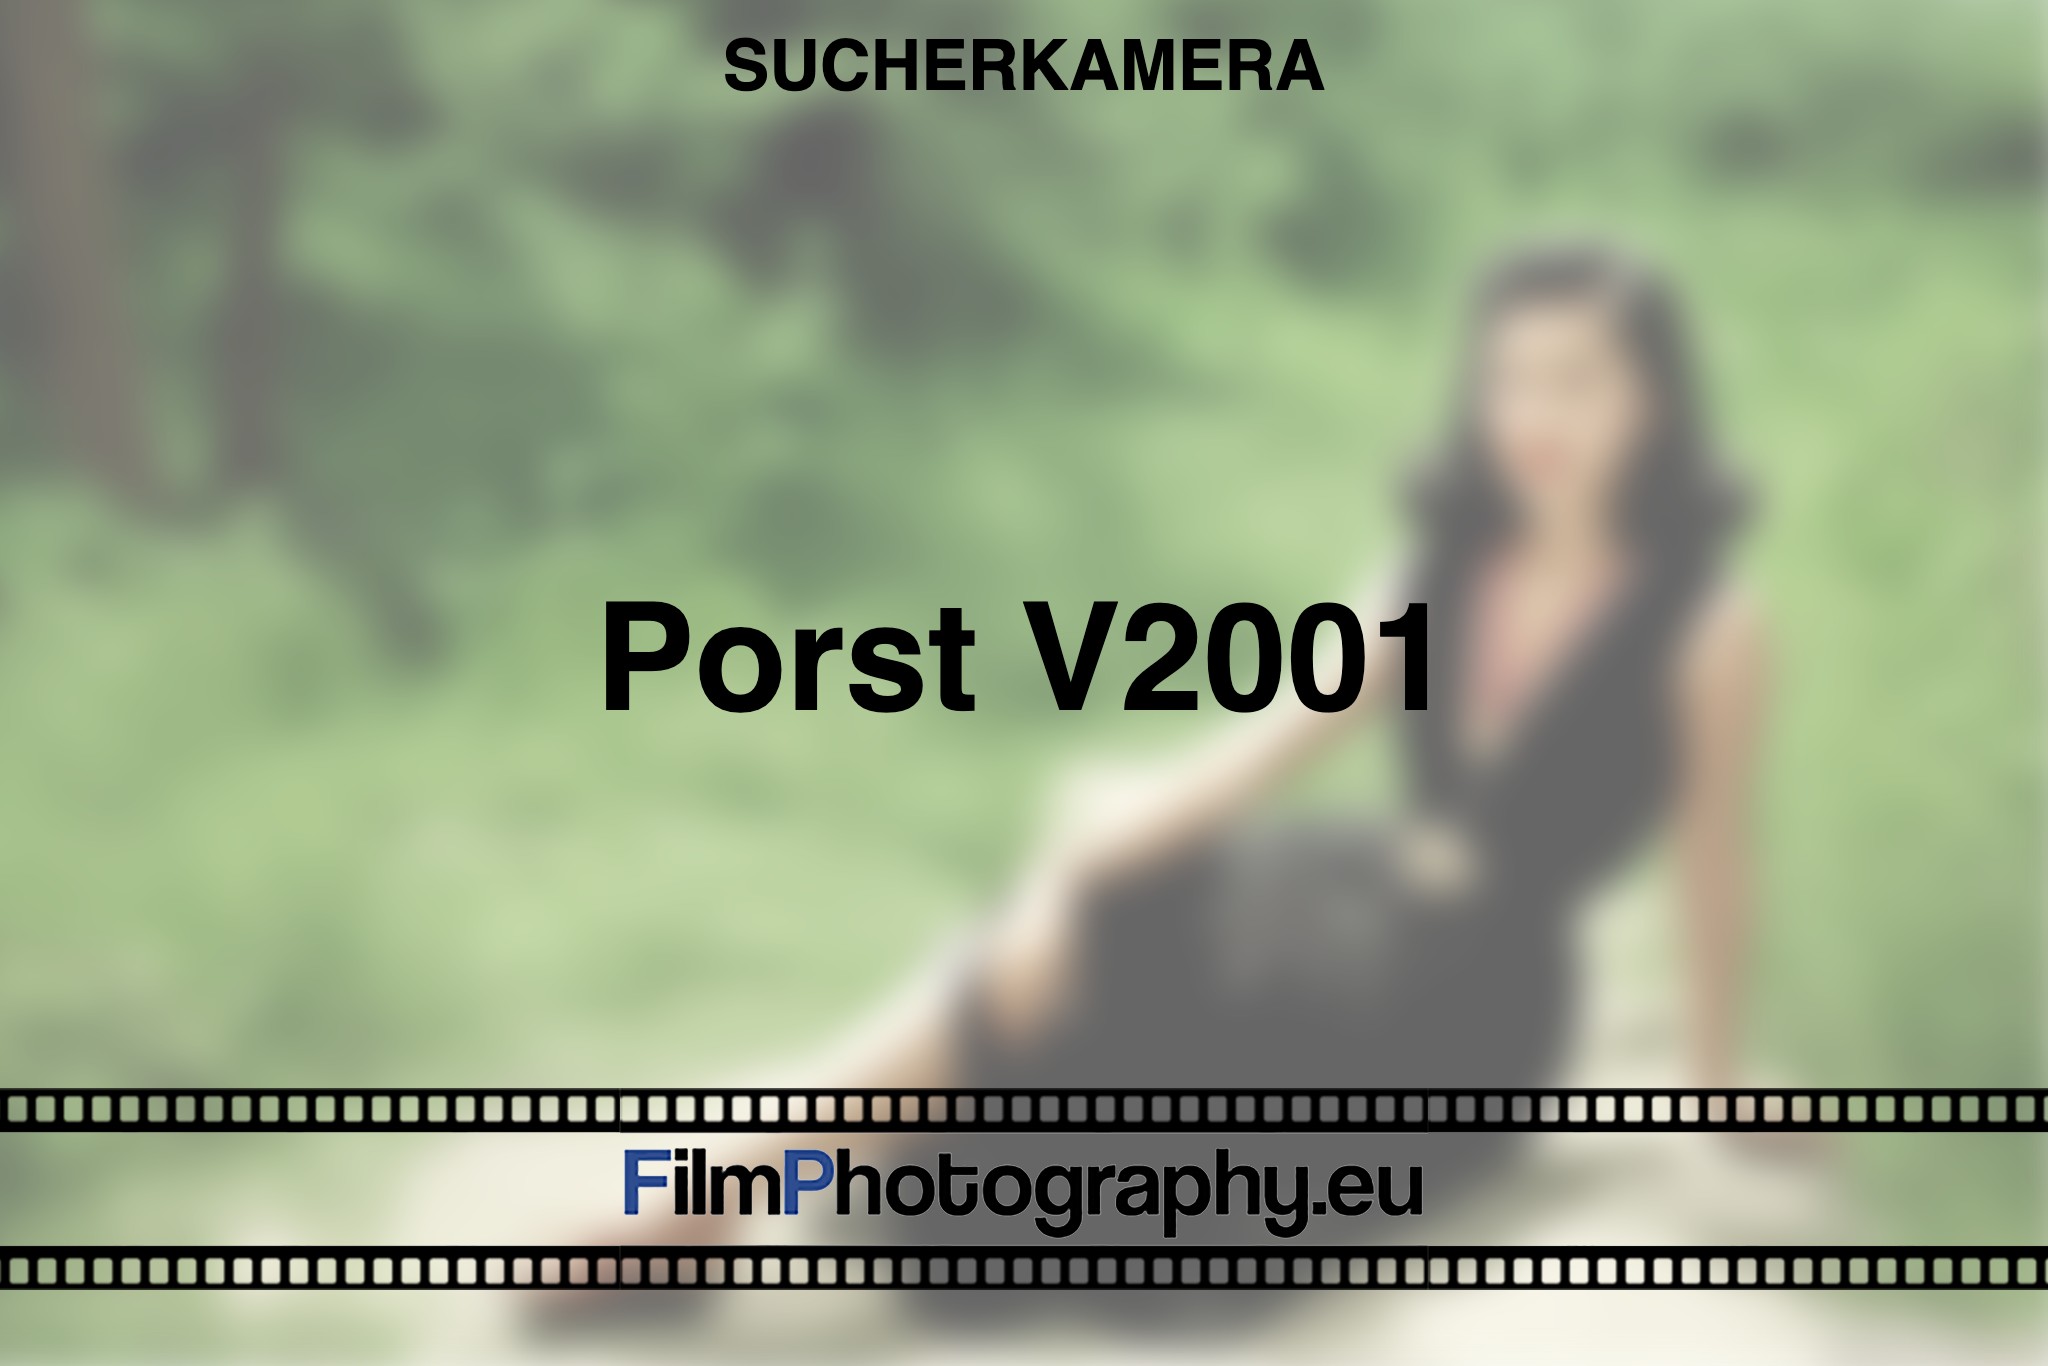 porst-v2001-sucherkamera-bnv